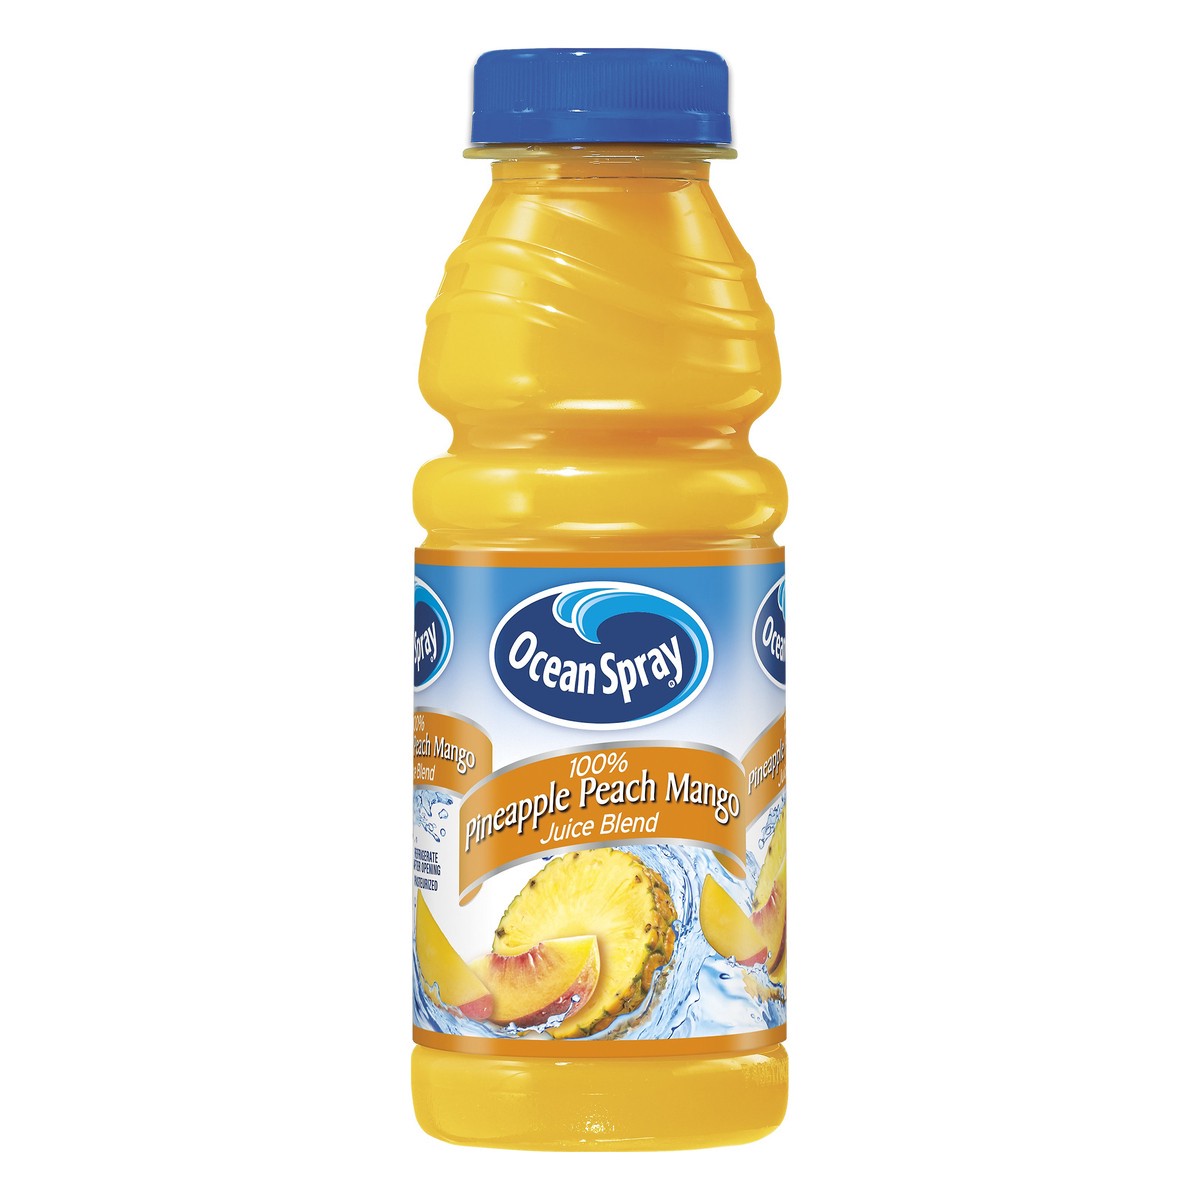 slide 1 of 2, Ocean Spray Pineapple Peach Mango 100% Juice Blend - 15.2 oz, 15.2 oz